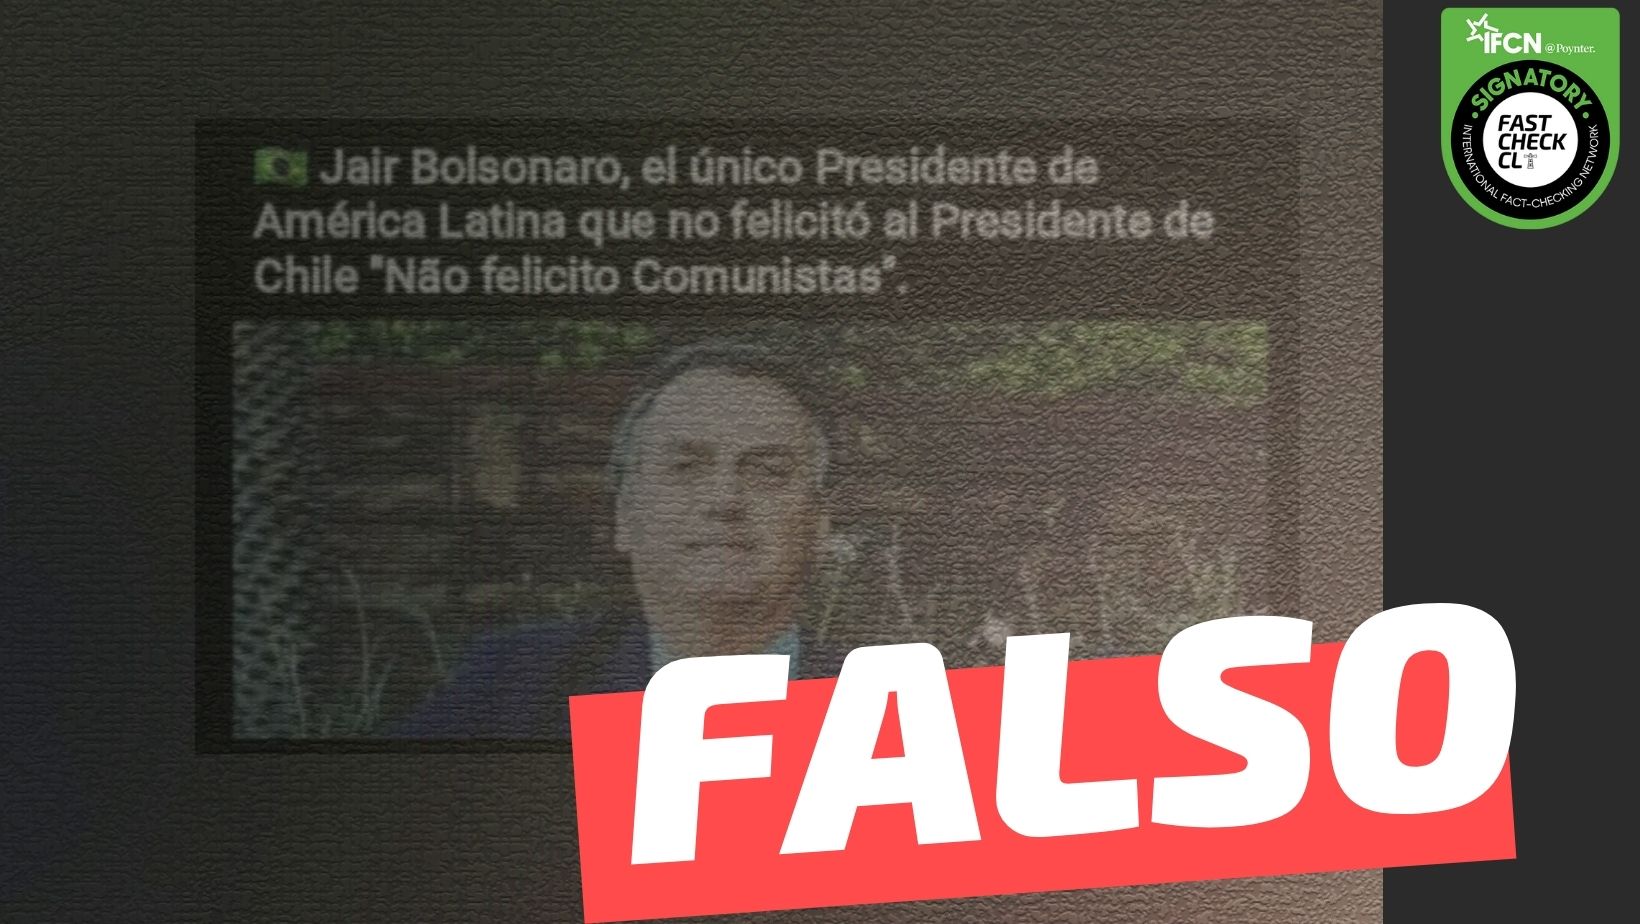 Read more about the article (Imagen) Jair Bolsonaro: “Ñao felicito Comunistas”: #Falso